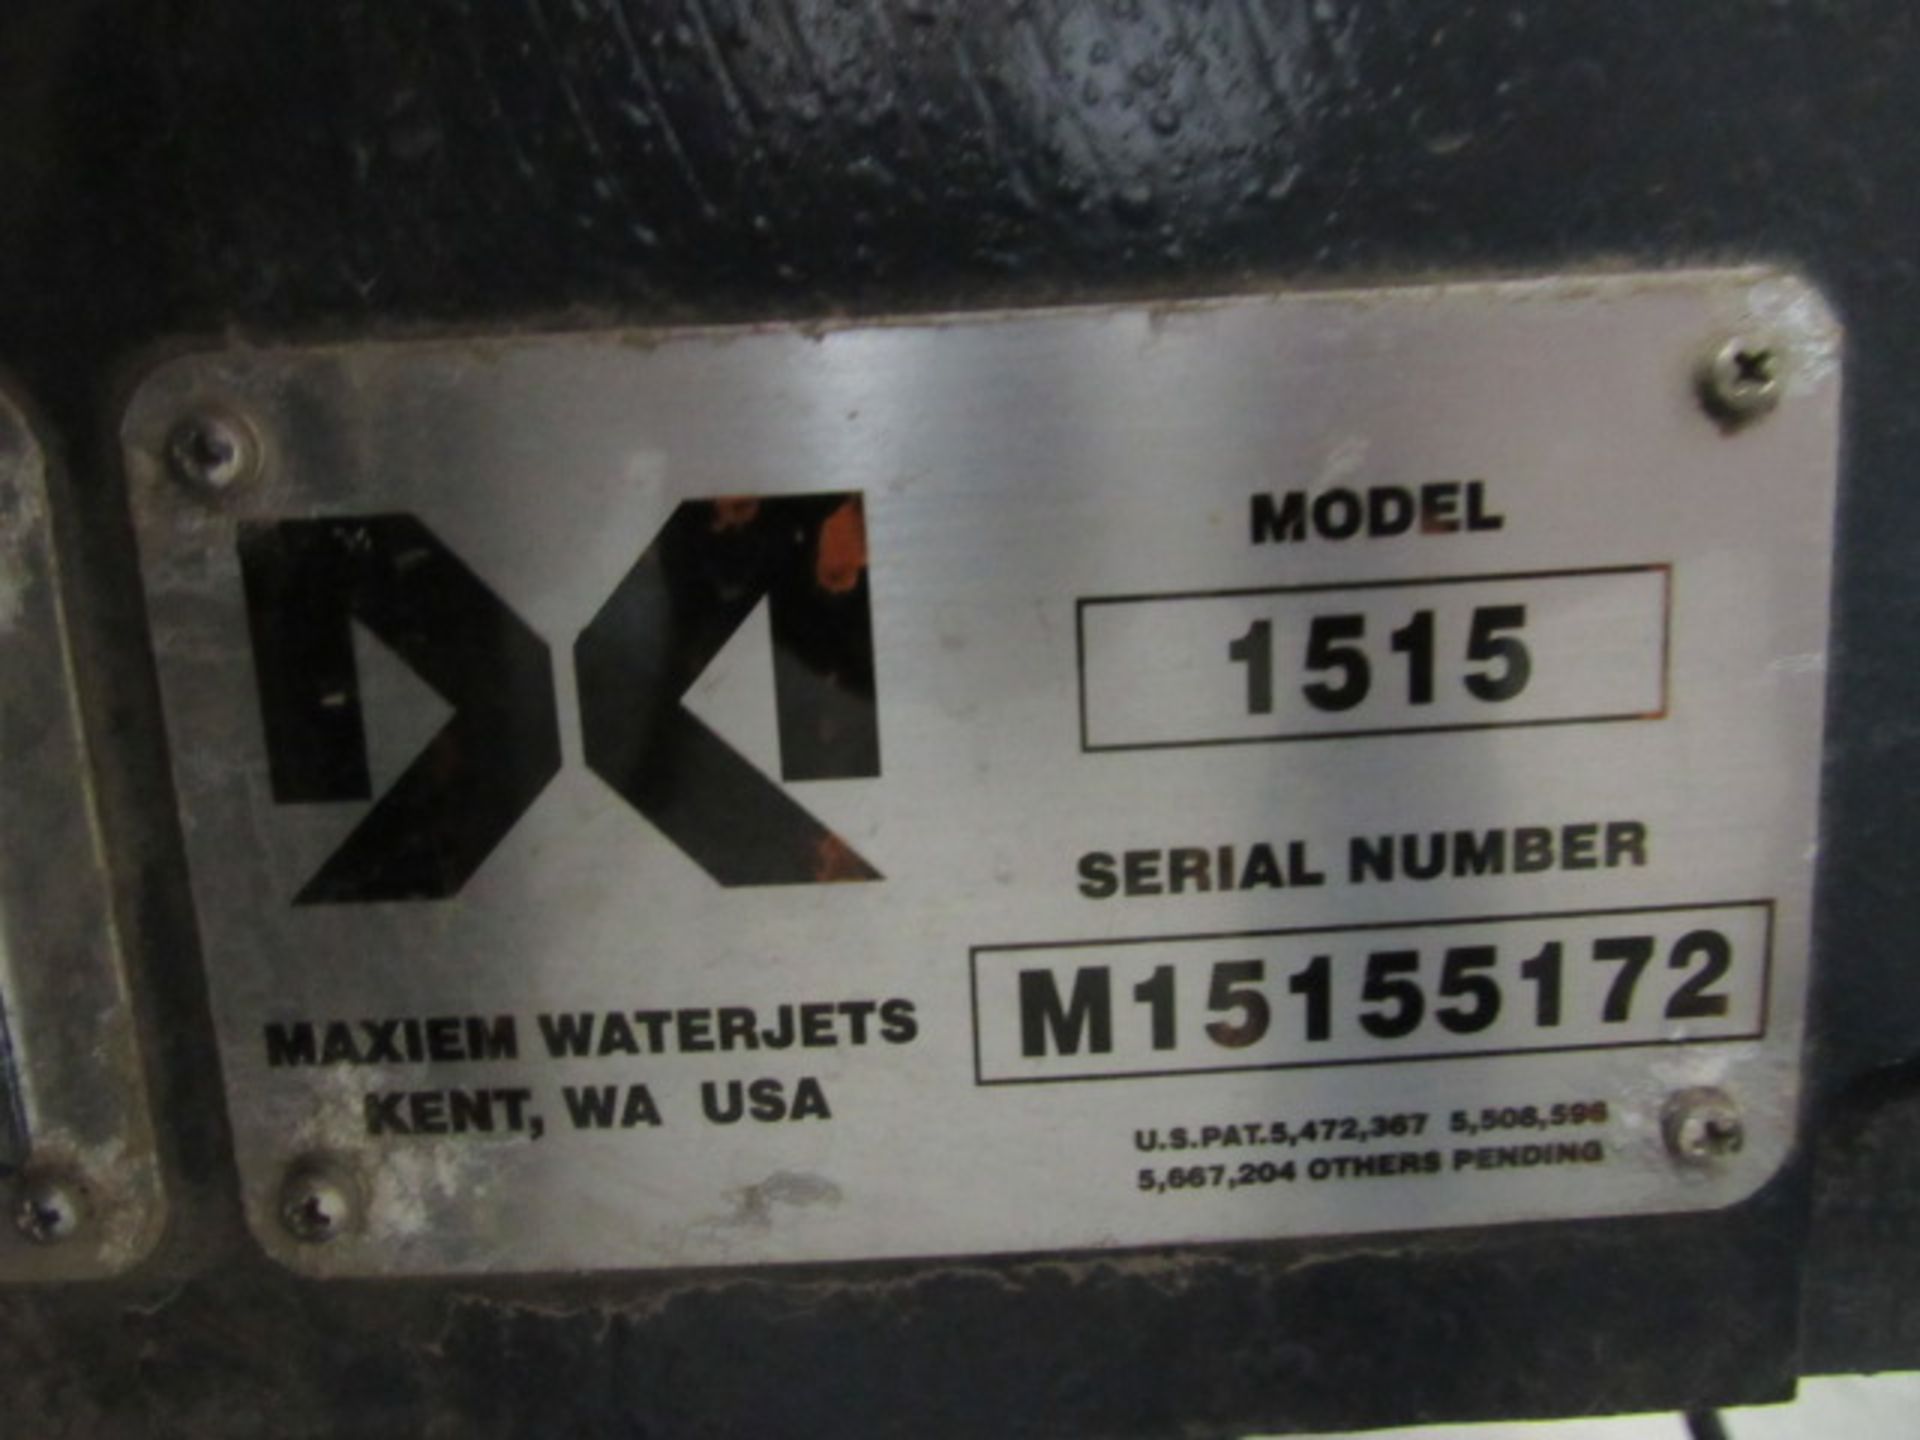 Omax Maxiem Model 1515 CNC Waterjet Cutting Machine - Image 5 of 5